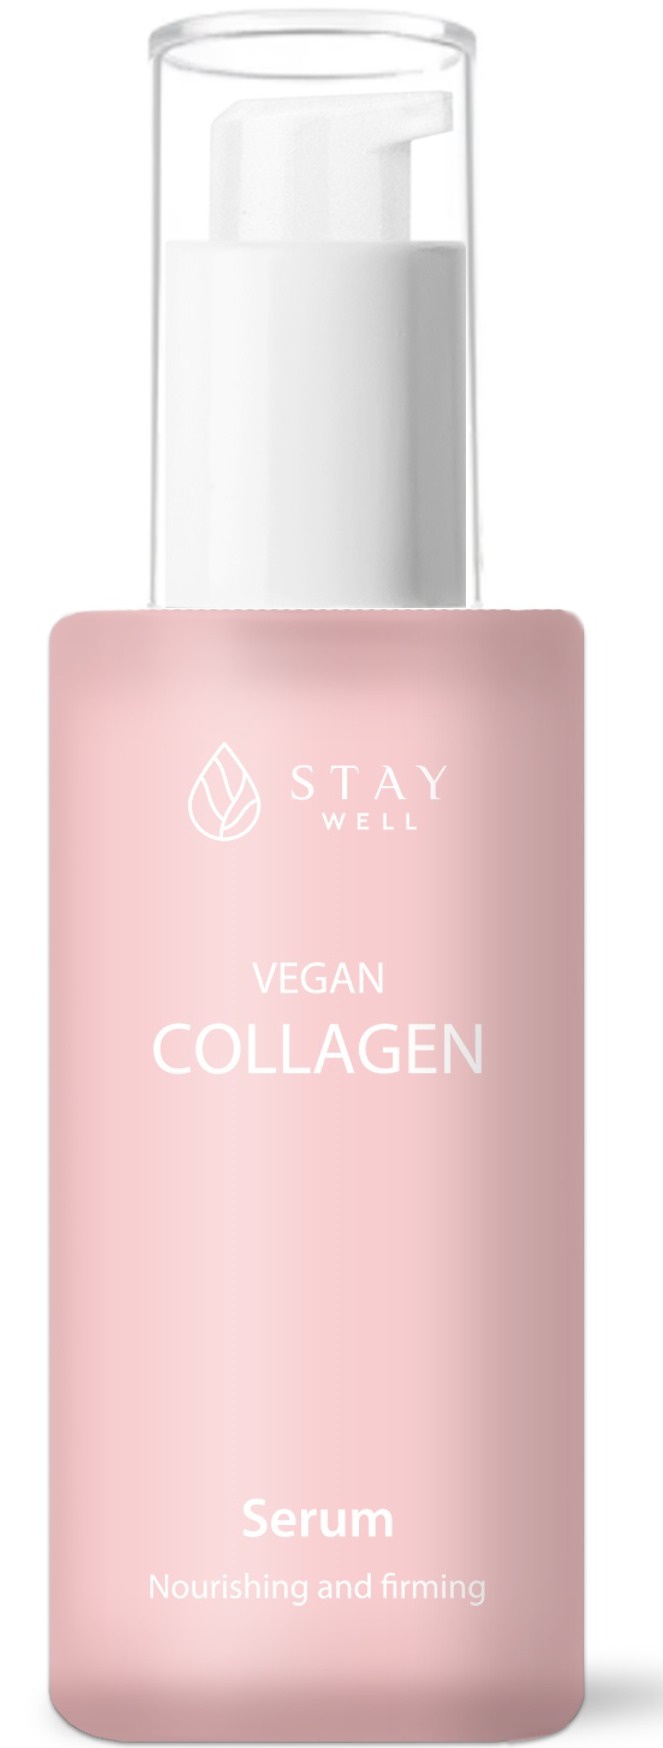 Stay Well Vegan Collagen Serum